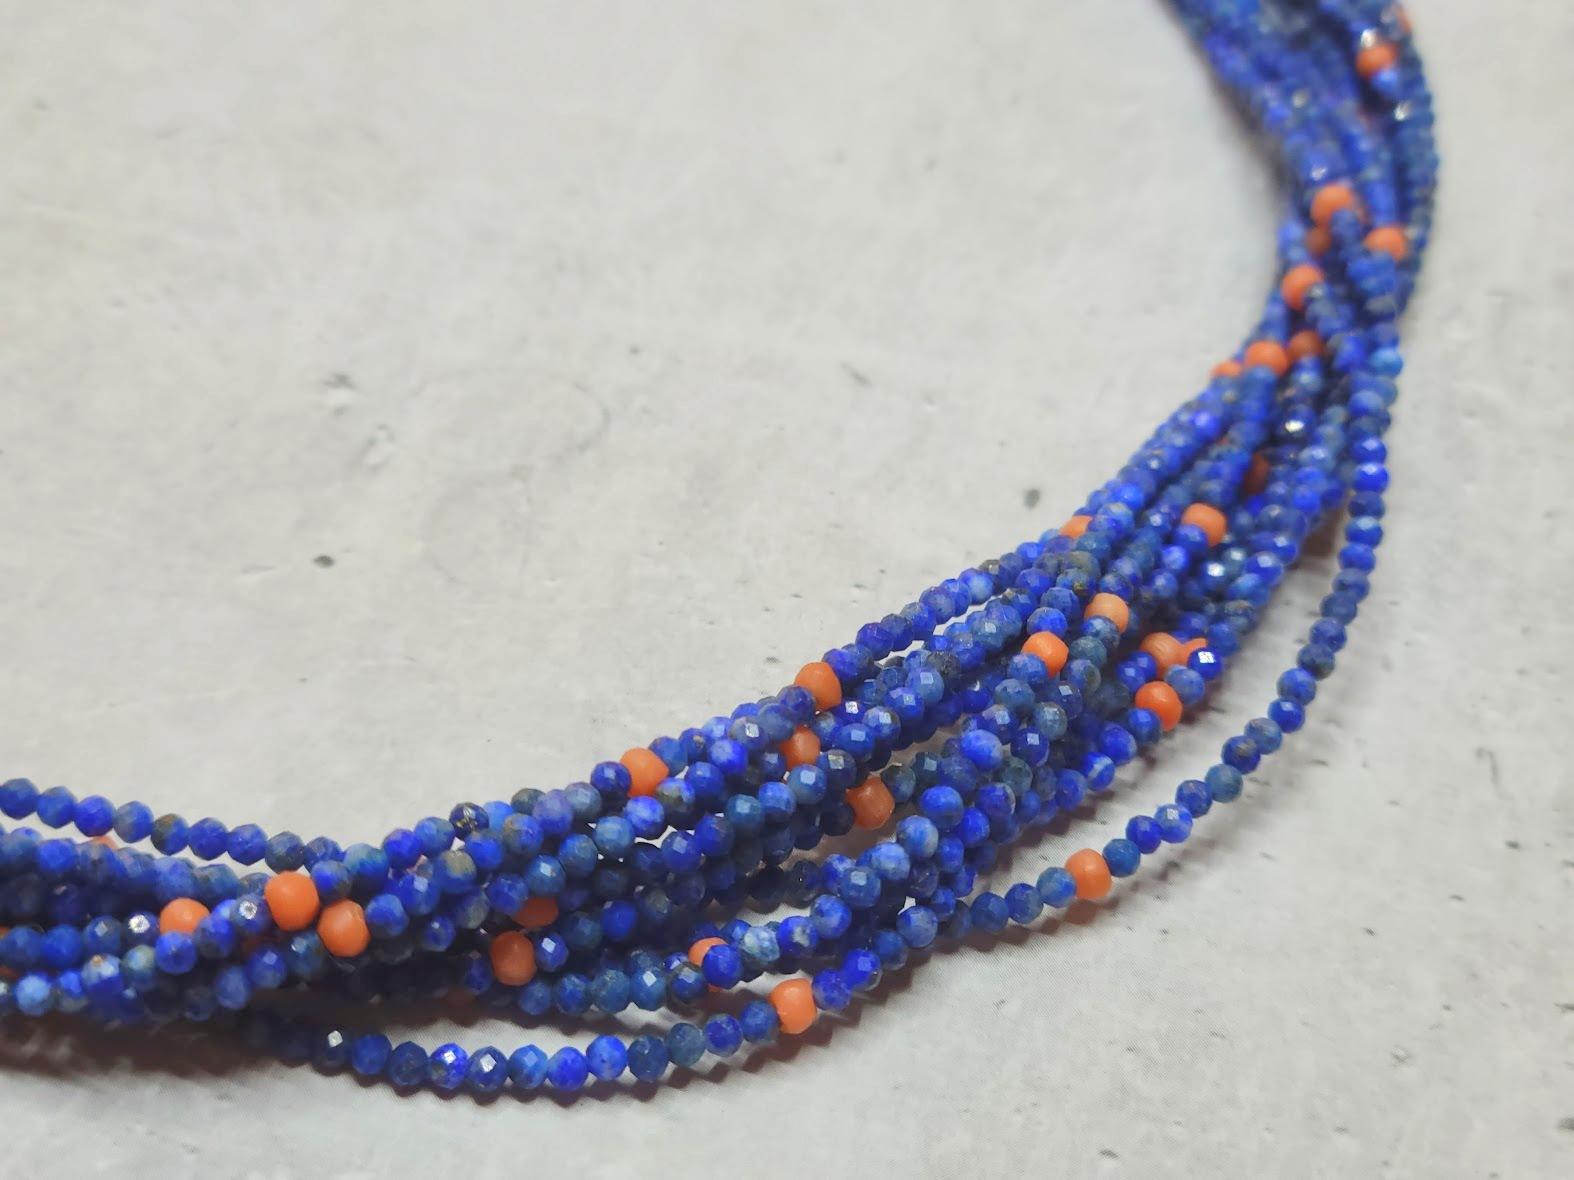 Wir präsentieren eine atemberaubende 12-strängige Perlenkette aus natürlichem afghanischem Lapislazuli und natürlicher italienischer Mittelmeerkoralle im Vintage-Stil. Die facettierten Lapislazuli-Perlen bieten einen Überfluss an blauen Farbtönen,